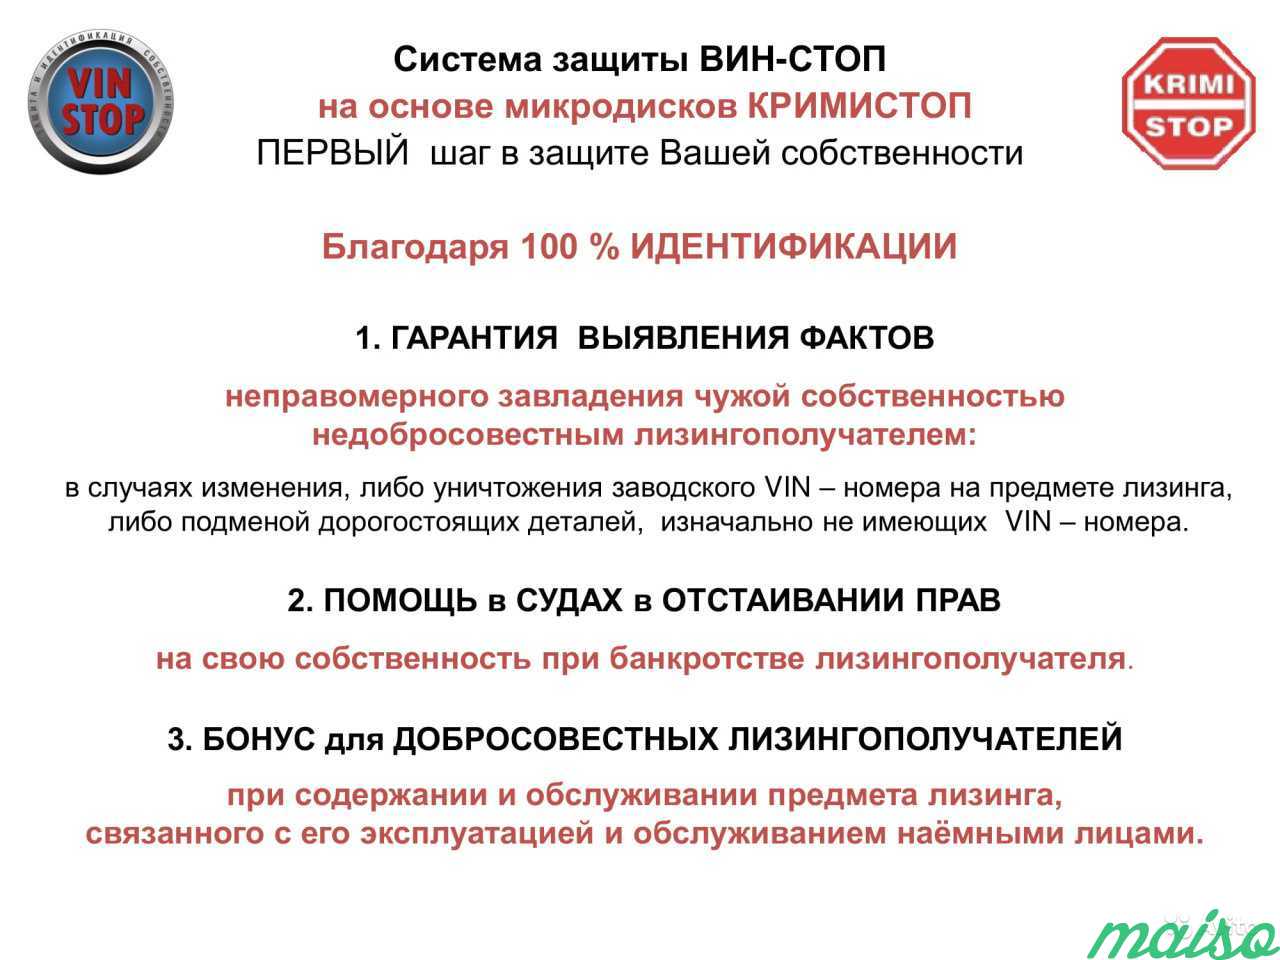 Защита и идентификация собственности в Санкт-Петербурге. Фото 4